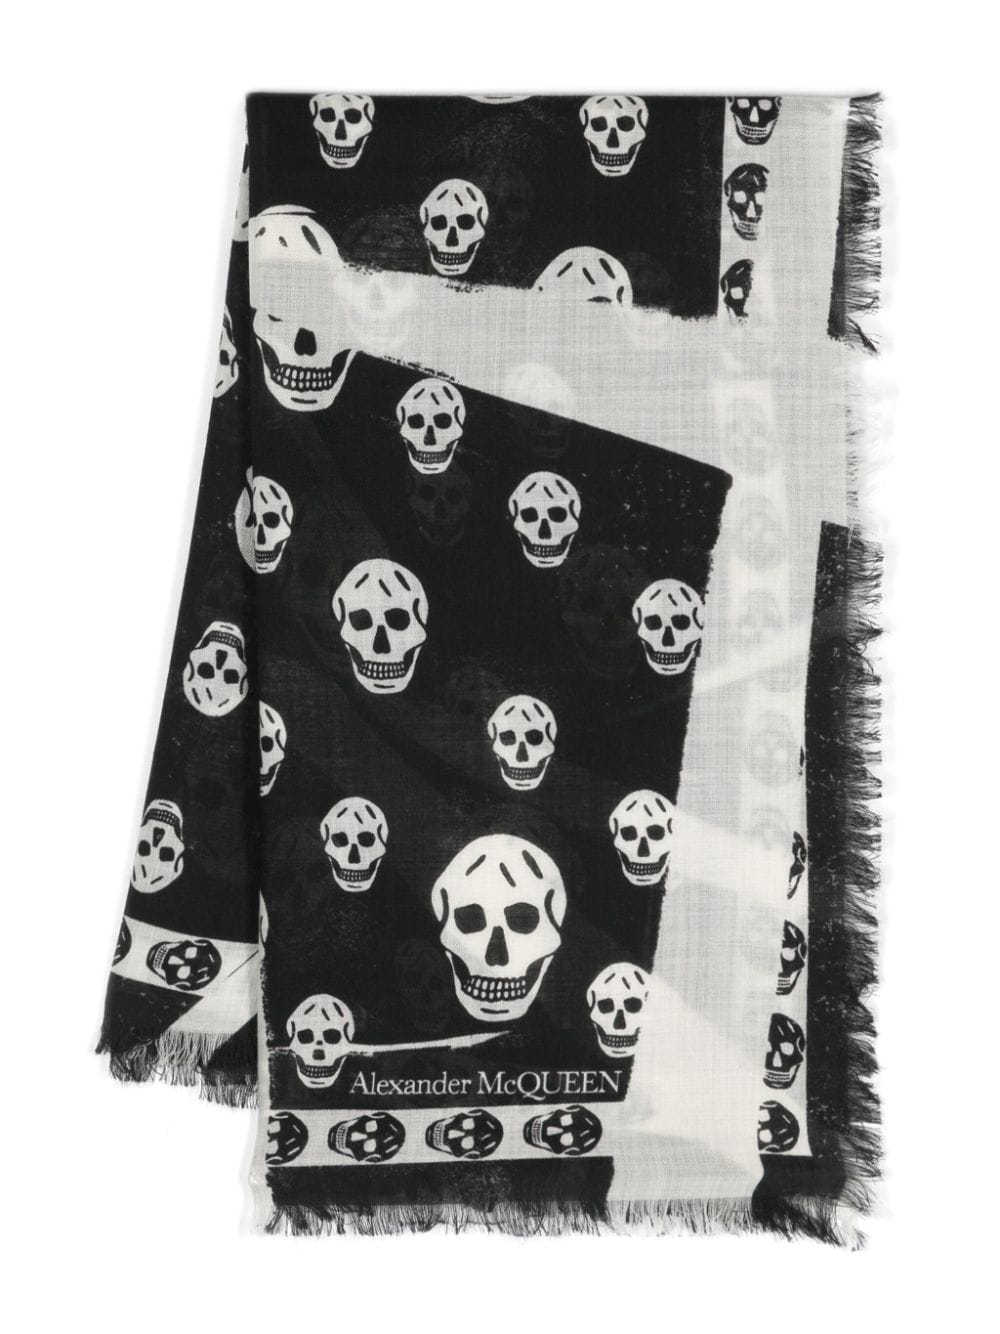 Skull-print wool scarf<BR/><BR/><BR/>